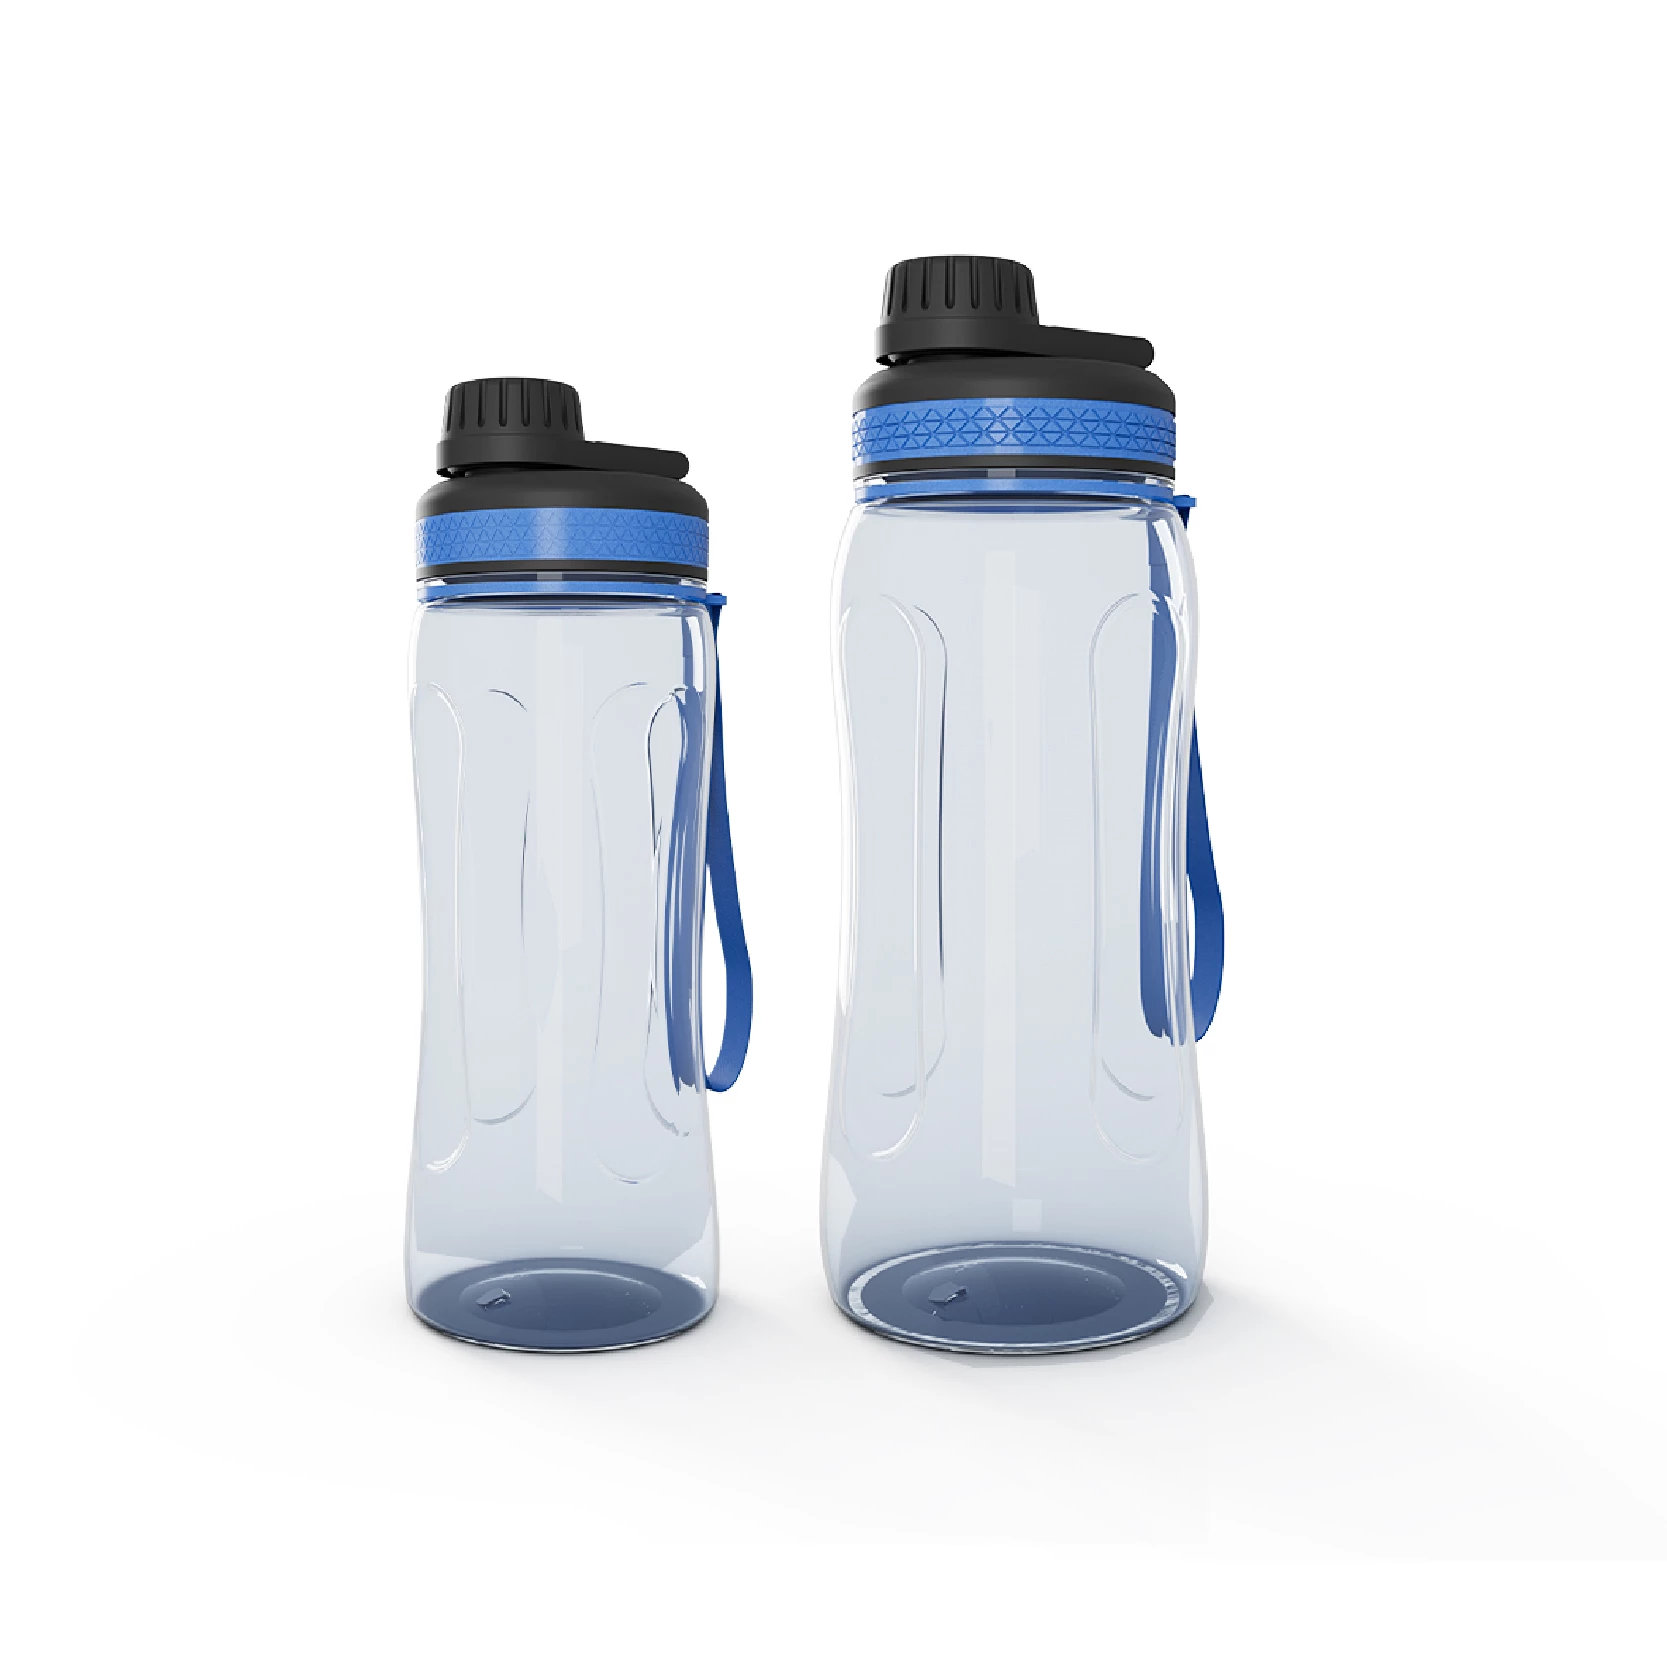 Plastic Water Bottles - Series 5